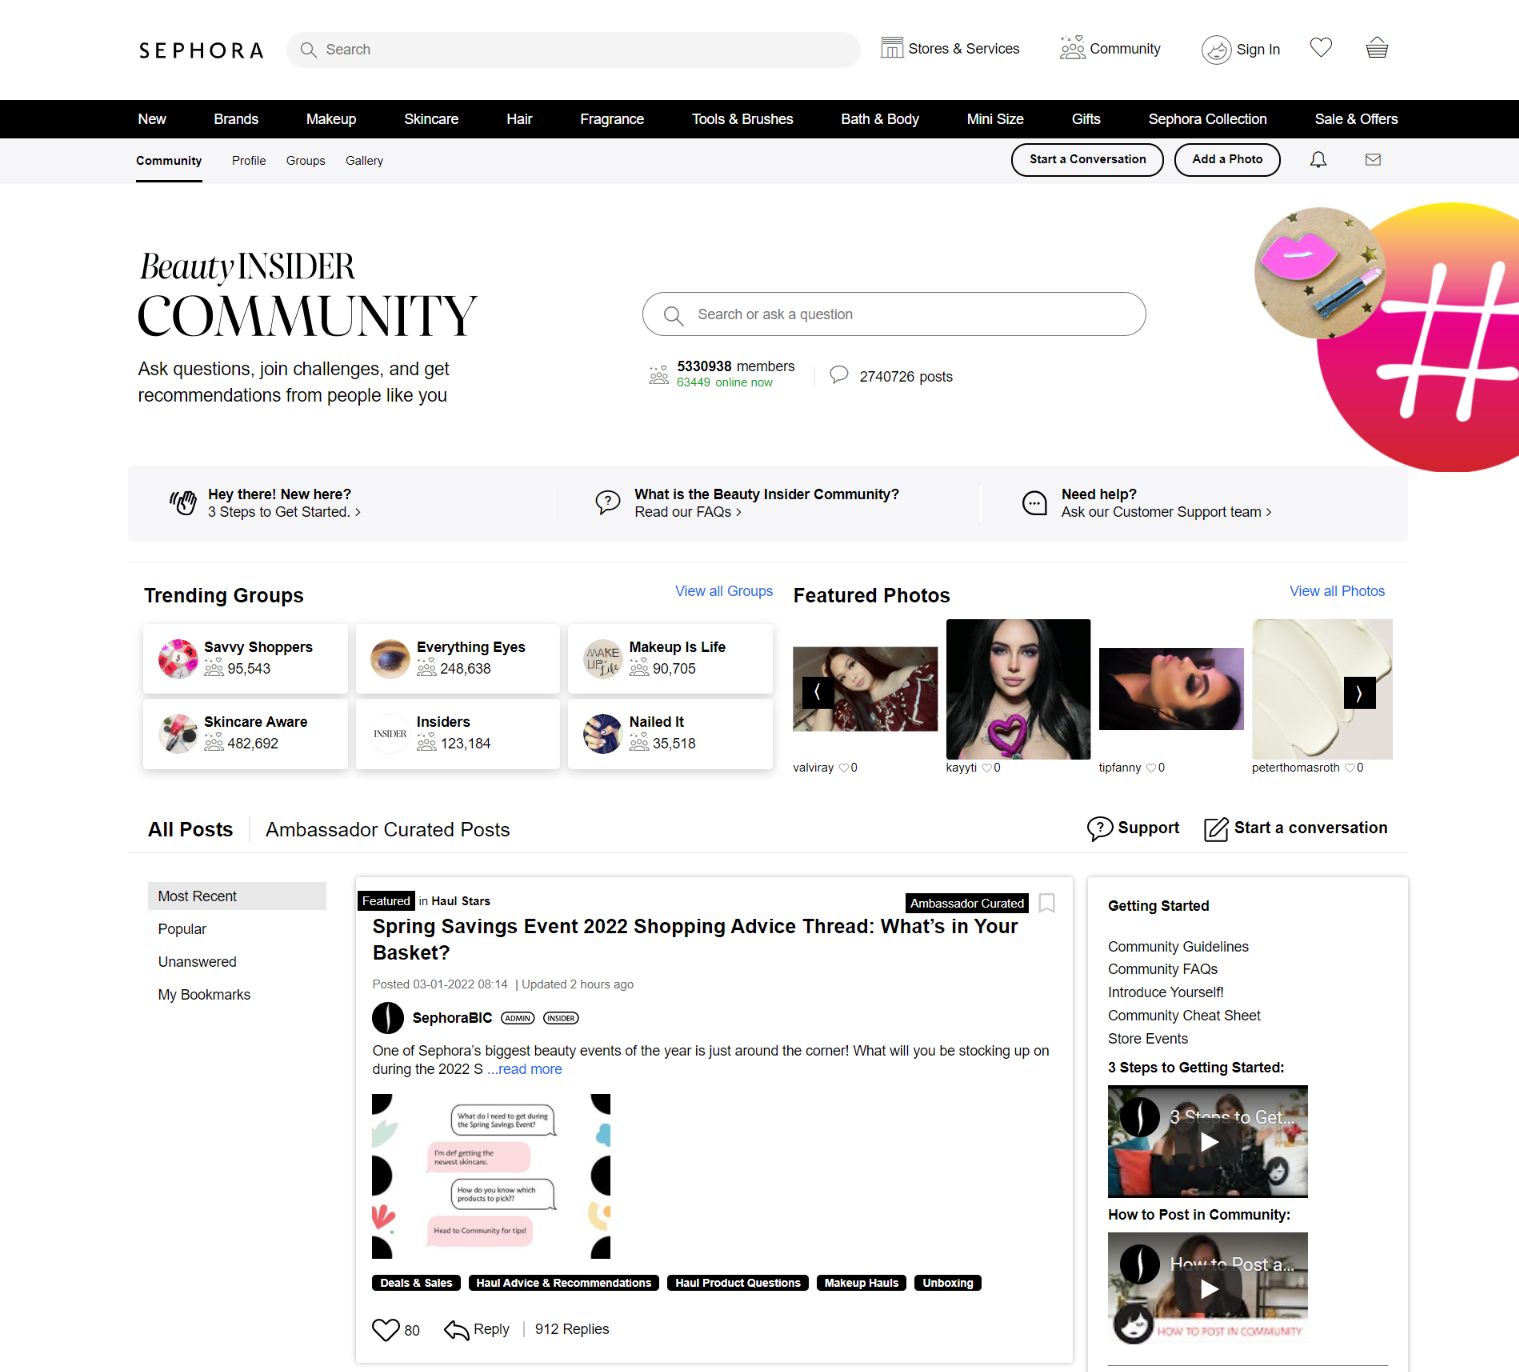 Сообщество от Sephora для потребителей